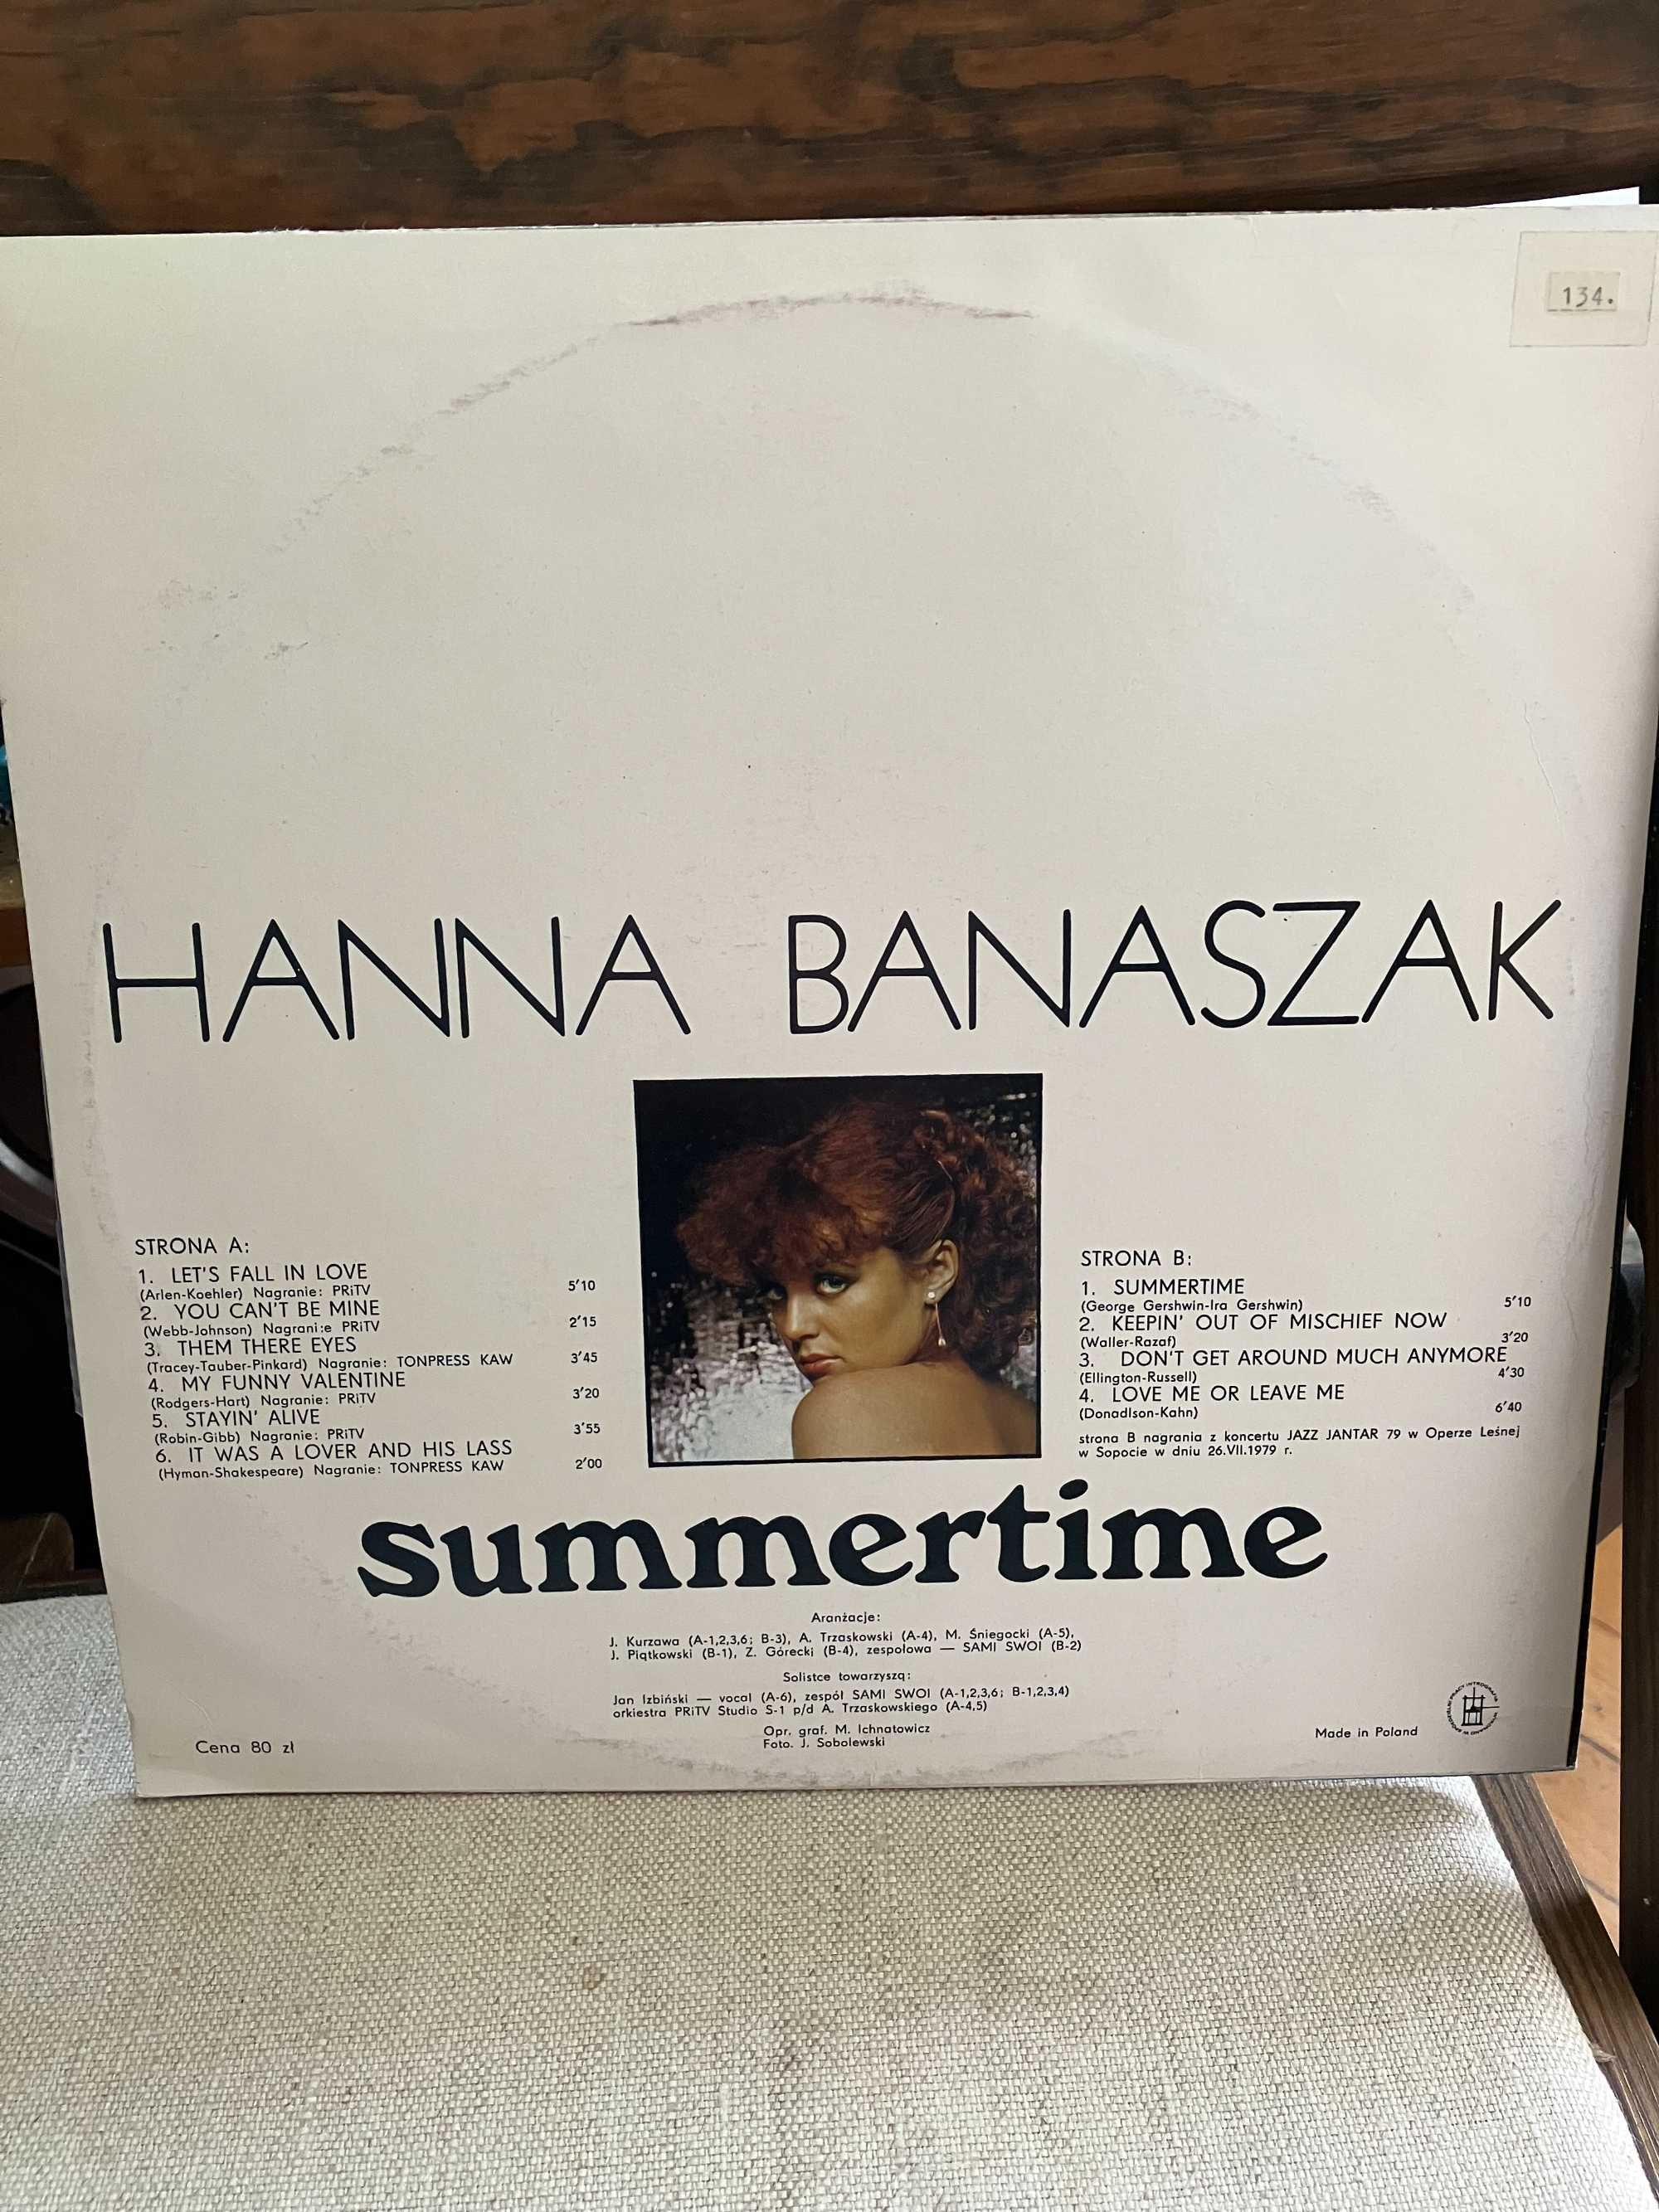 Winyl Hanna Banaszak  " Summertime" near mint